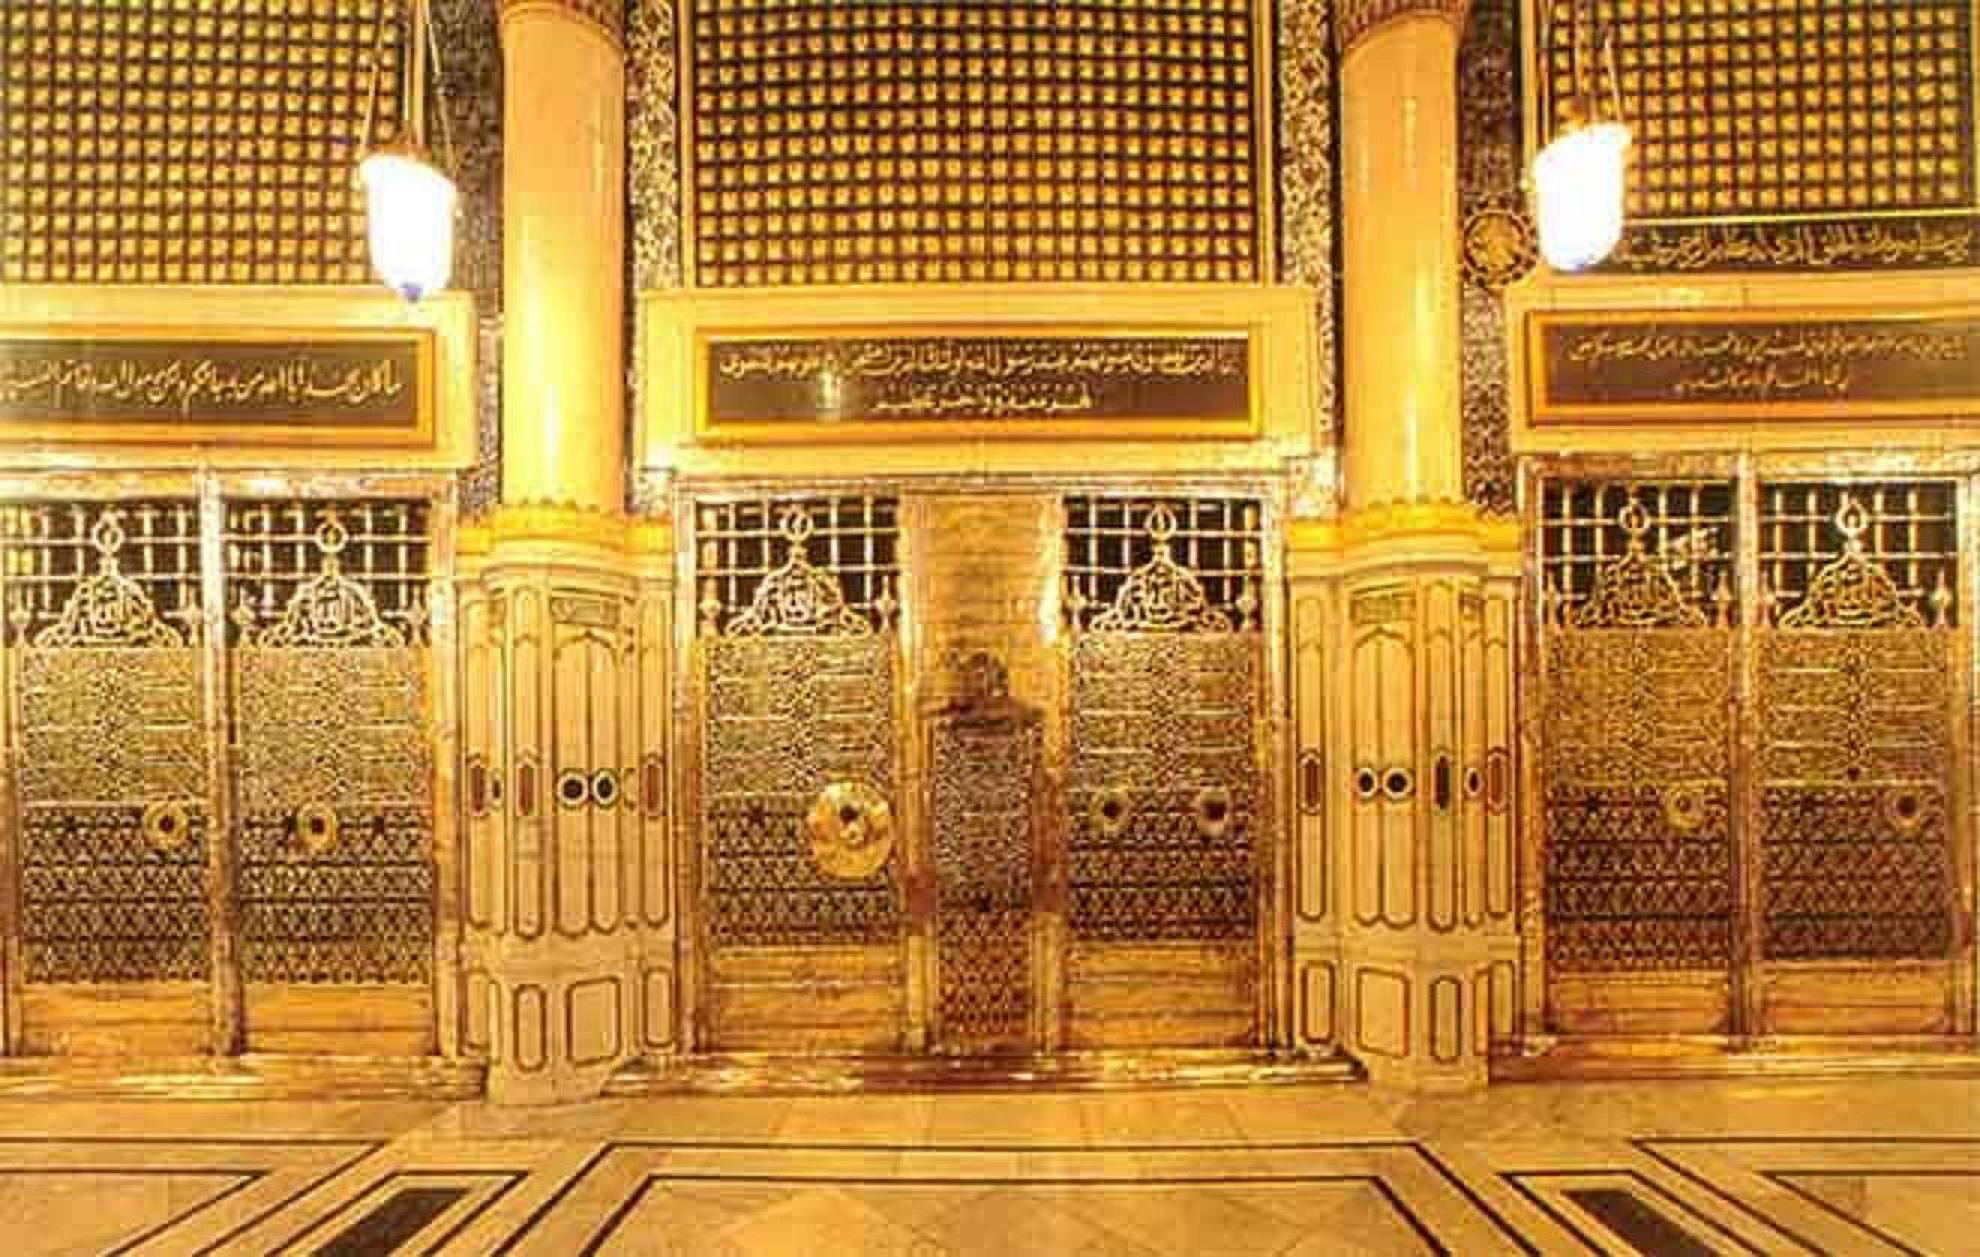 masjid e nabvi tapete,die architektur,gebäude,säule,bogen,fassade